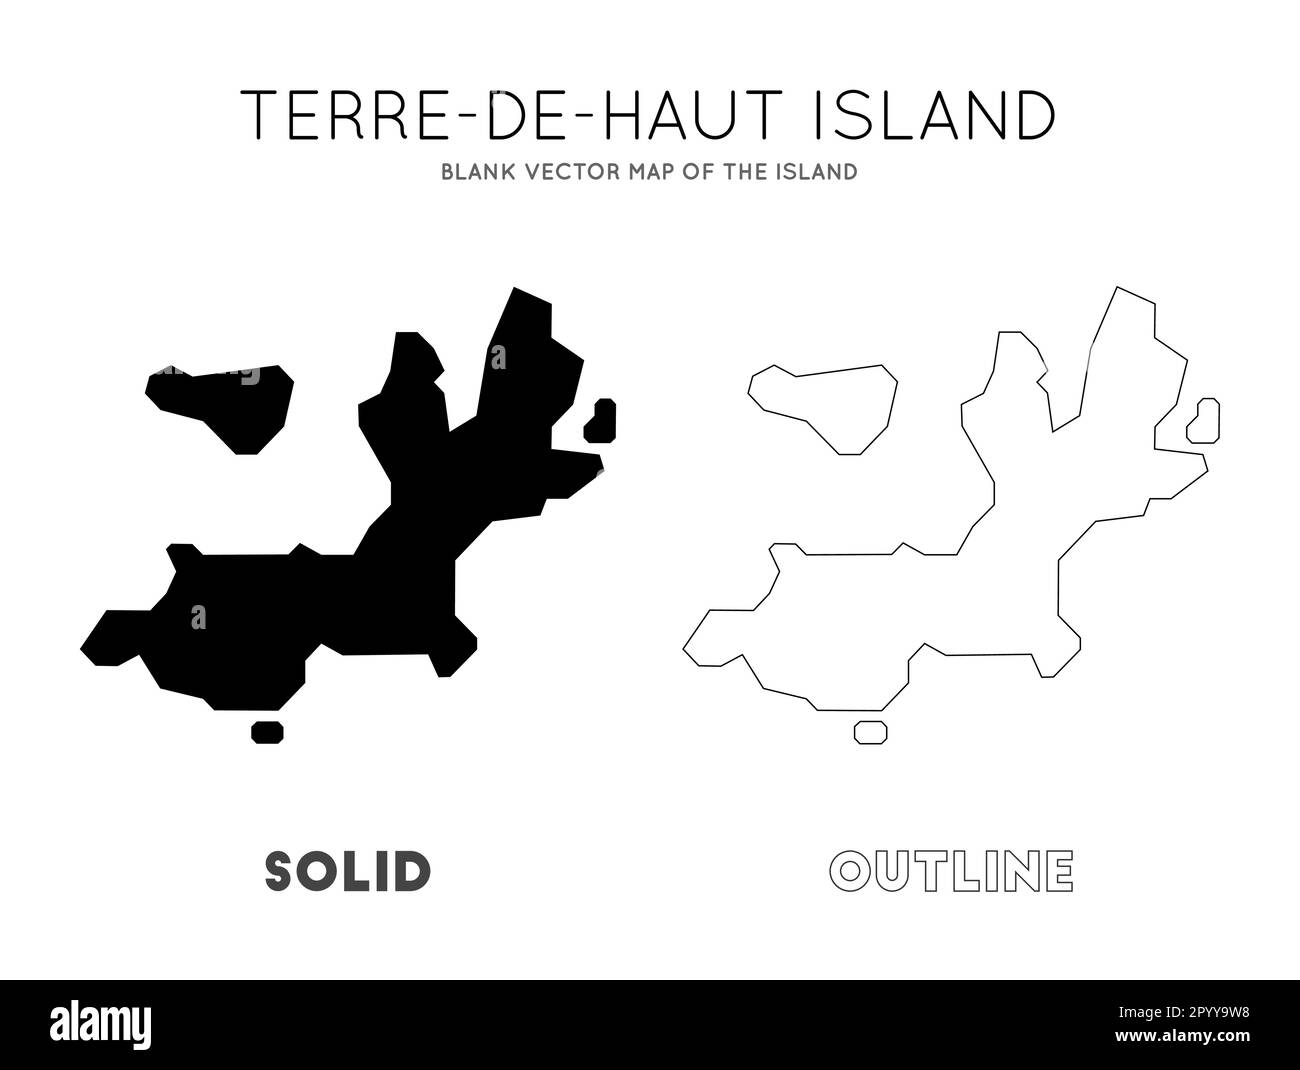 Terre-de-Haut Island map. Borders of Terre-de-Haut Island for your infographic. Vector illustration. Stock Vector